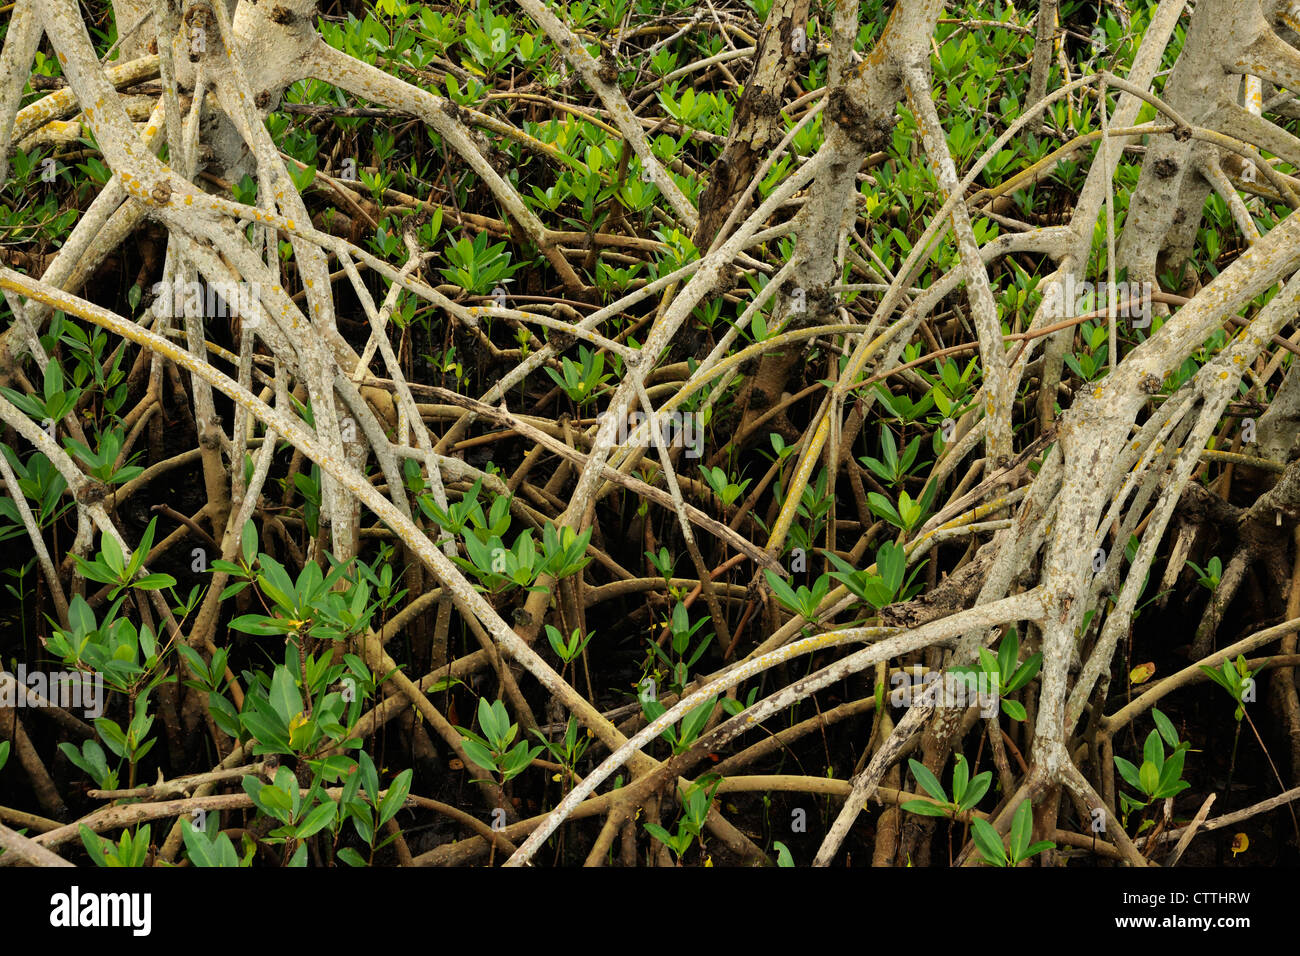 El mangle rojo (Rhizophora mangle) de tallos y raíces, Ding Darling NWR, Sanibel Island, Florida, EE.UU. Foto de stock